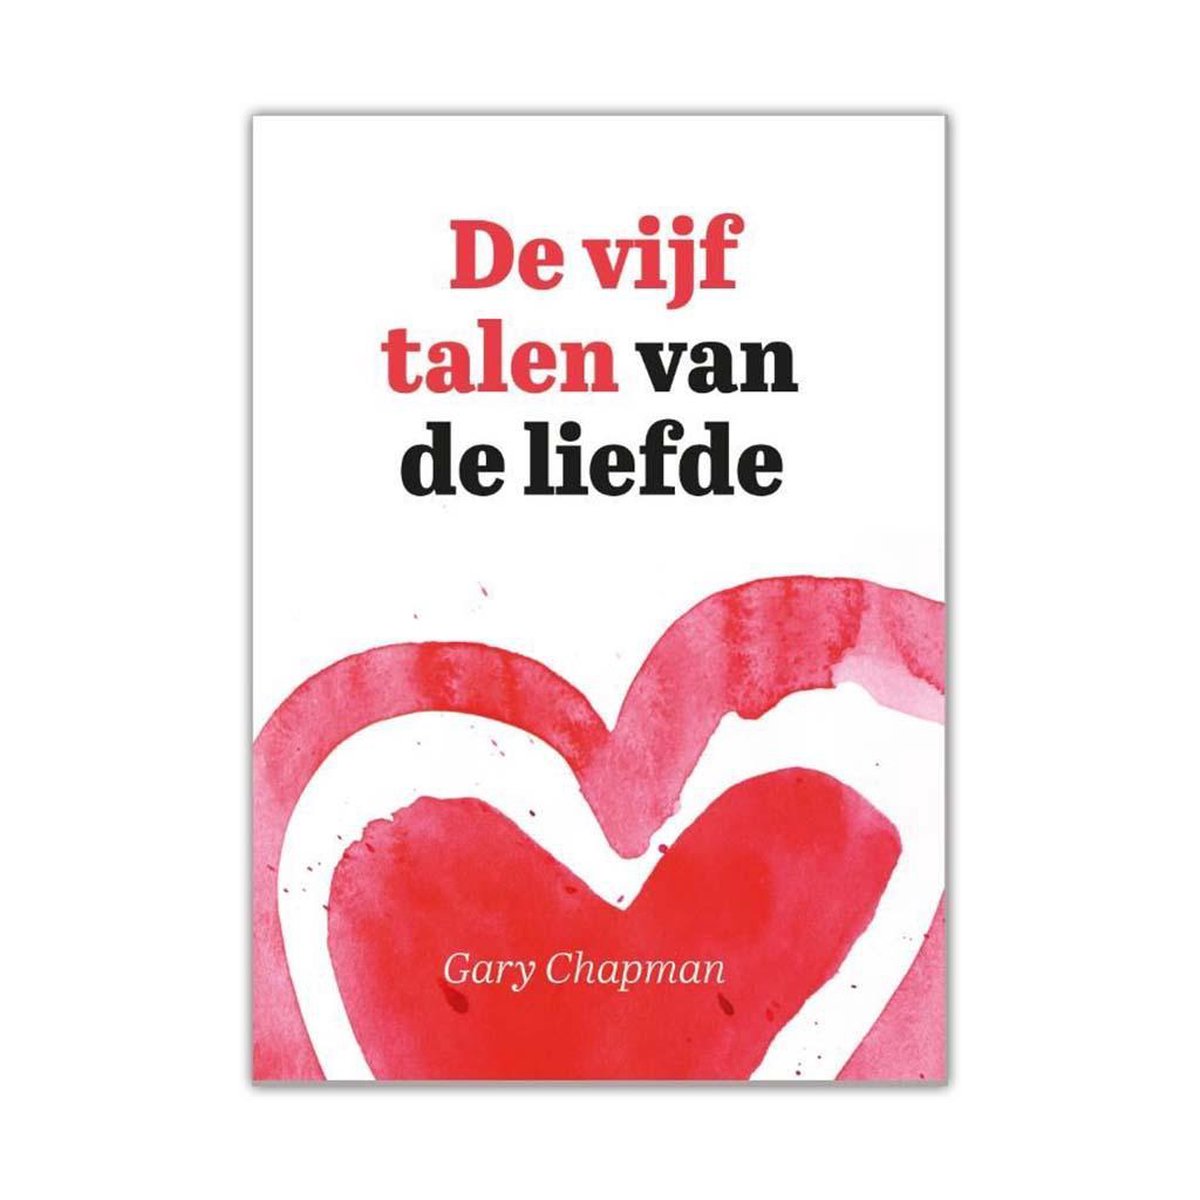 De vijf talen van de liefde - Gary Chapman